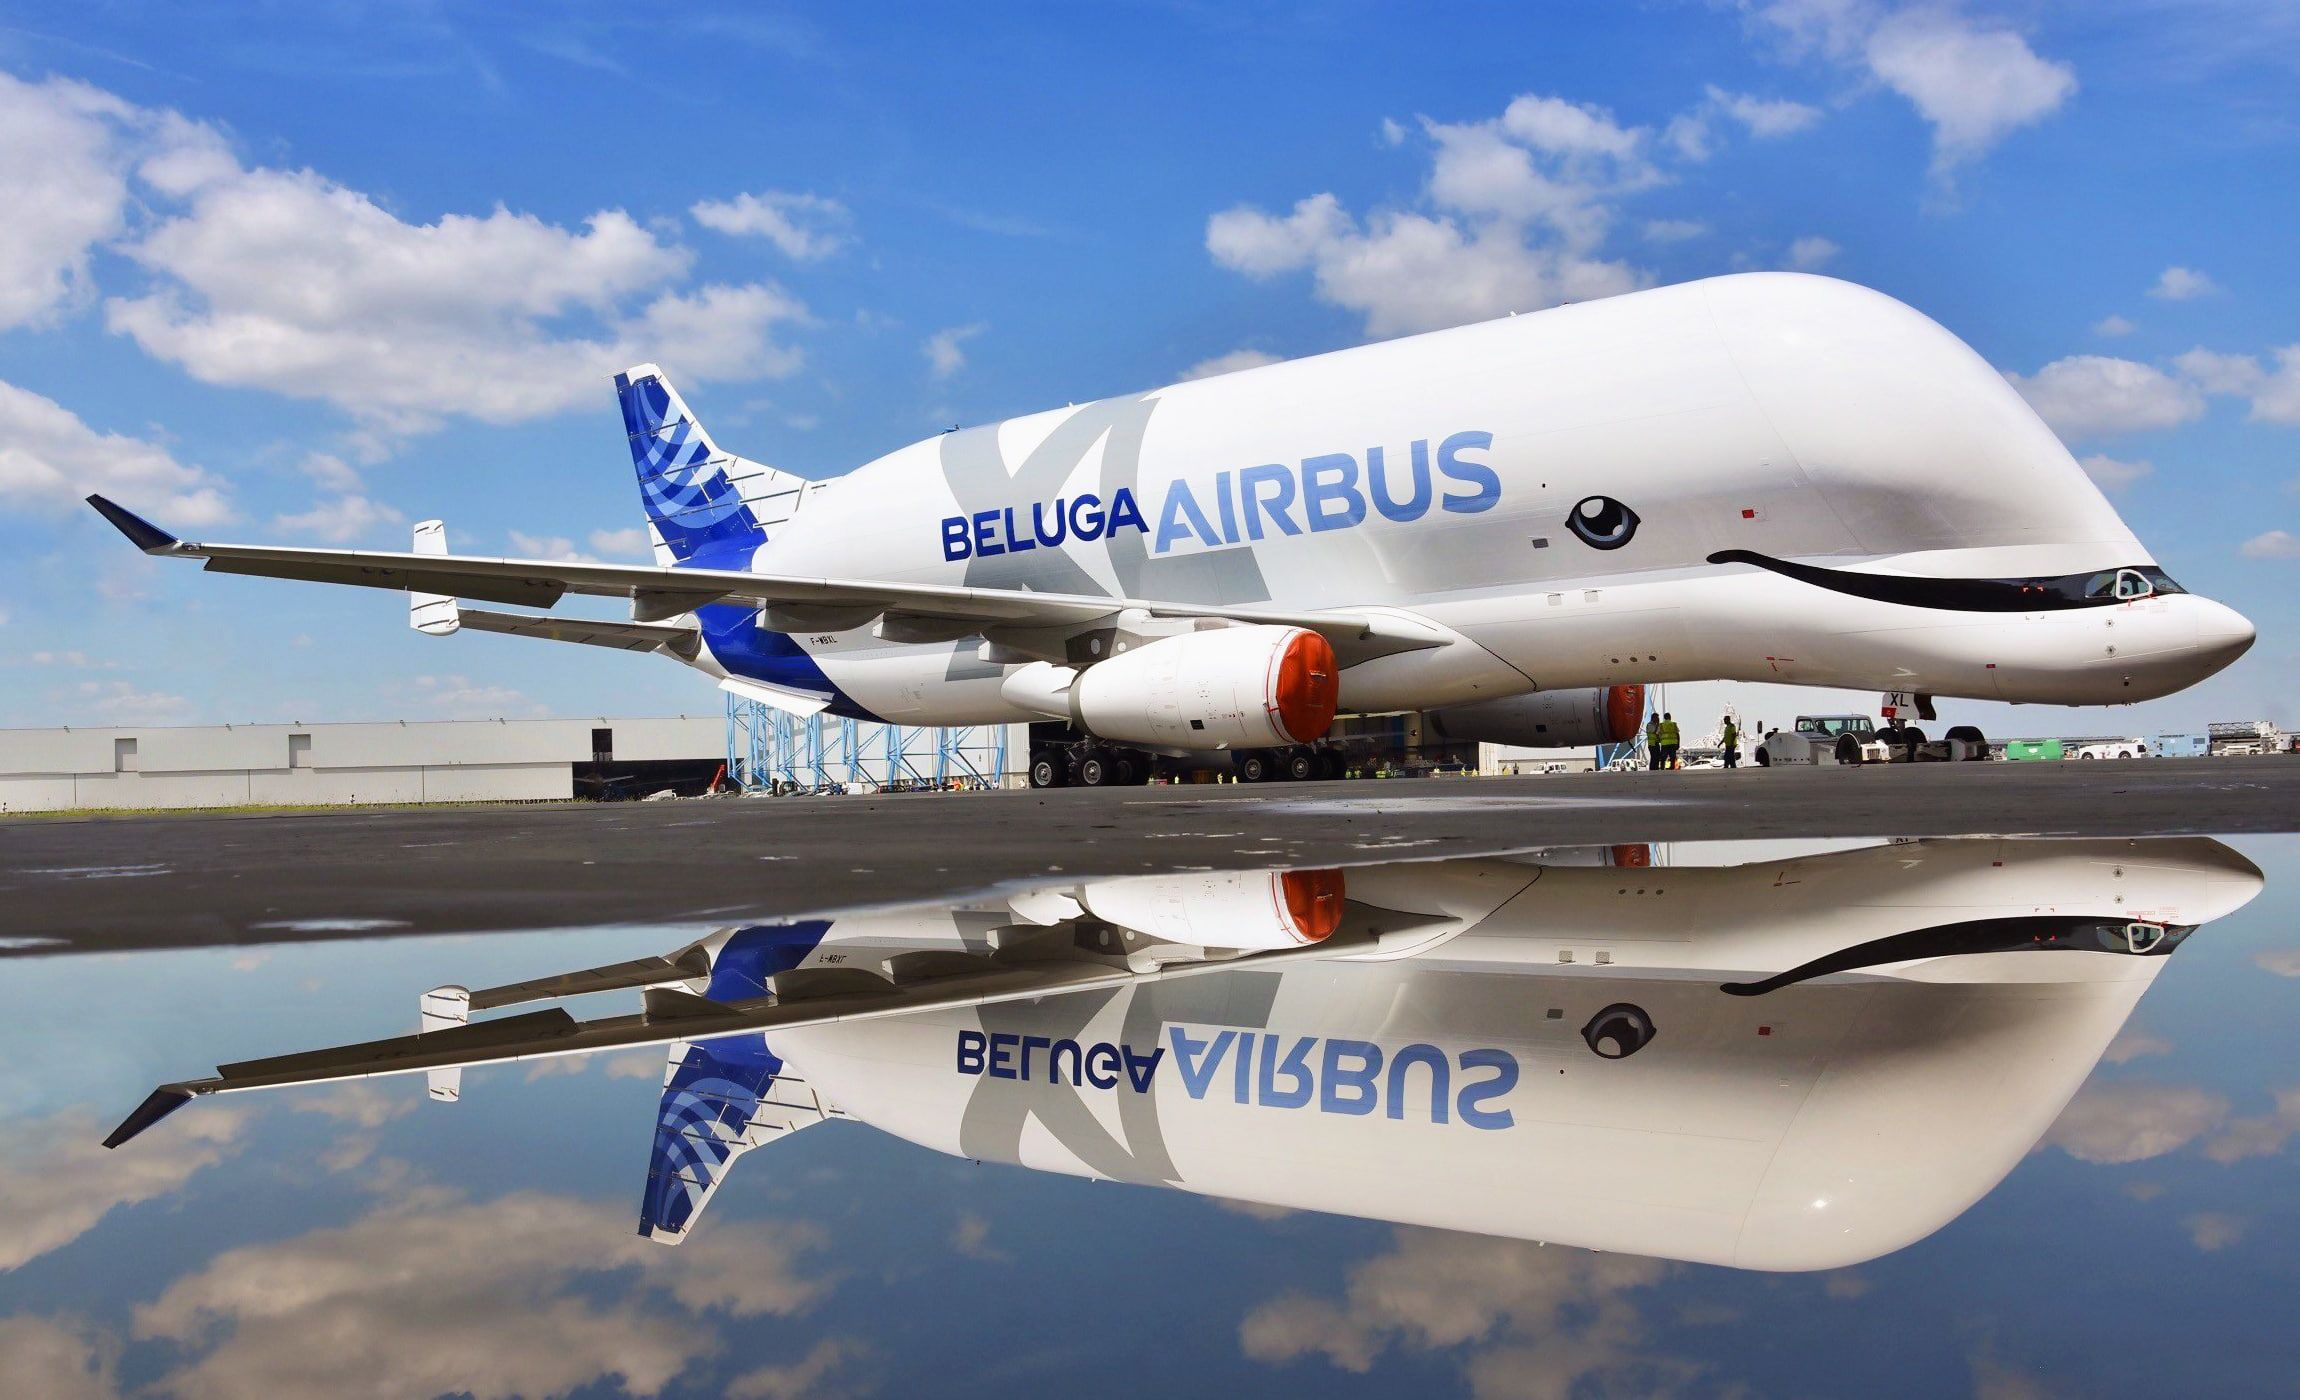 the plane #Reflection the plane #Cargo #Airbus #Beluga #A300 Airbus Beluga Super Transporter Beluga XL cargo Airbus Airbus Beluga XL Air. Airbus, Aircraft, Beluga